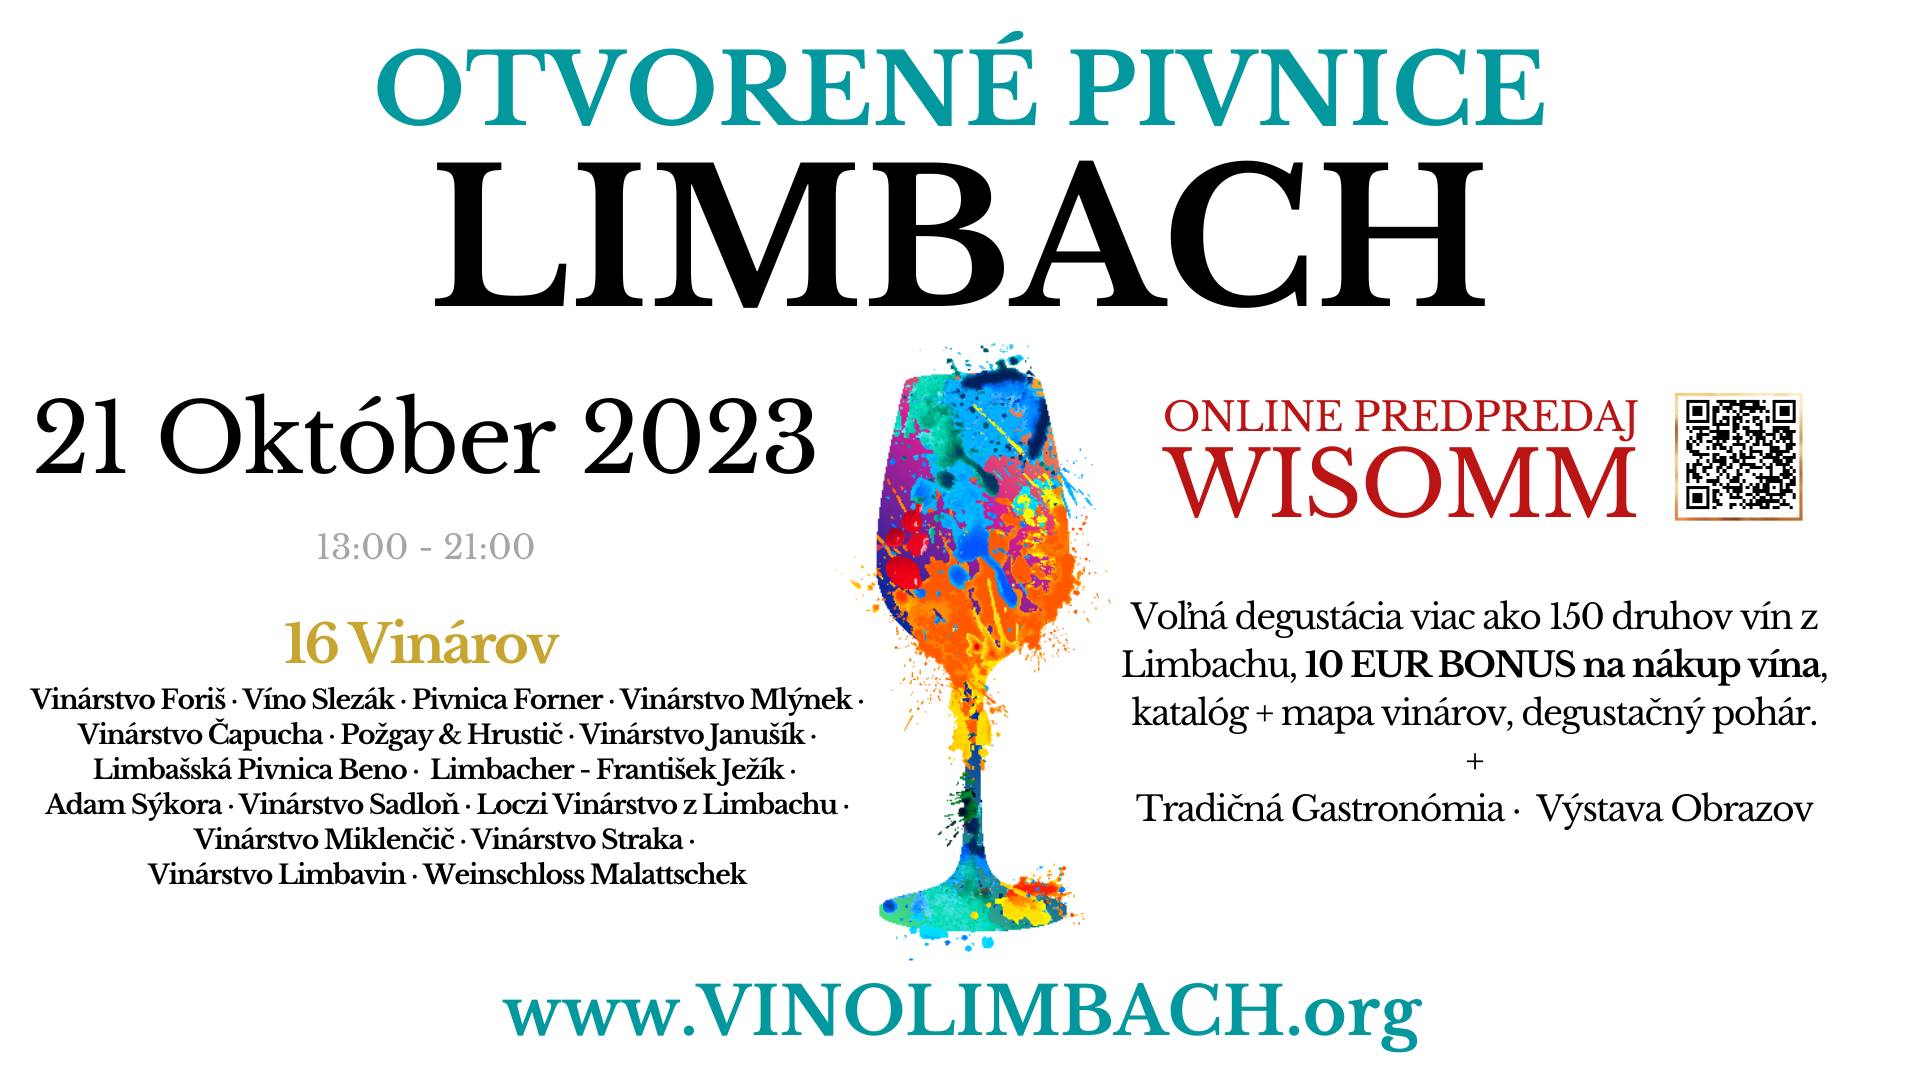 Otvoren pivnice Limbach 2023